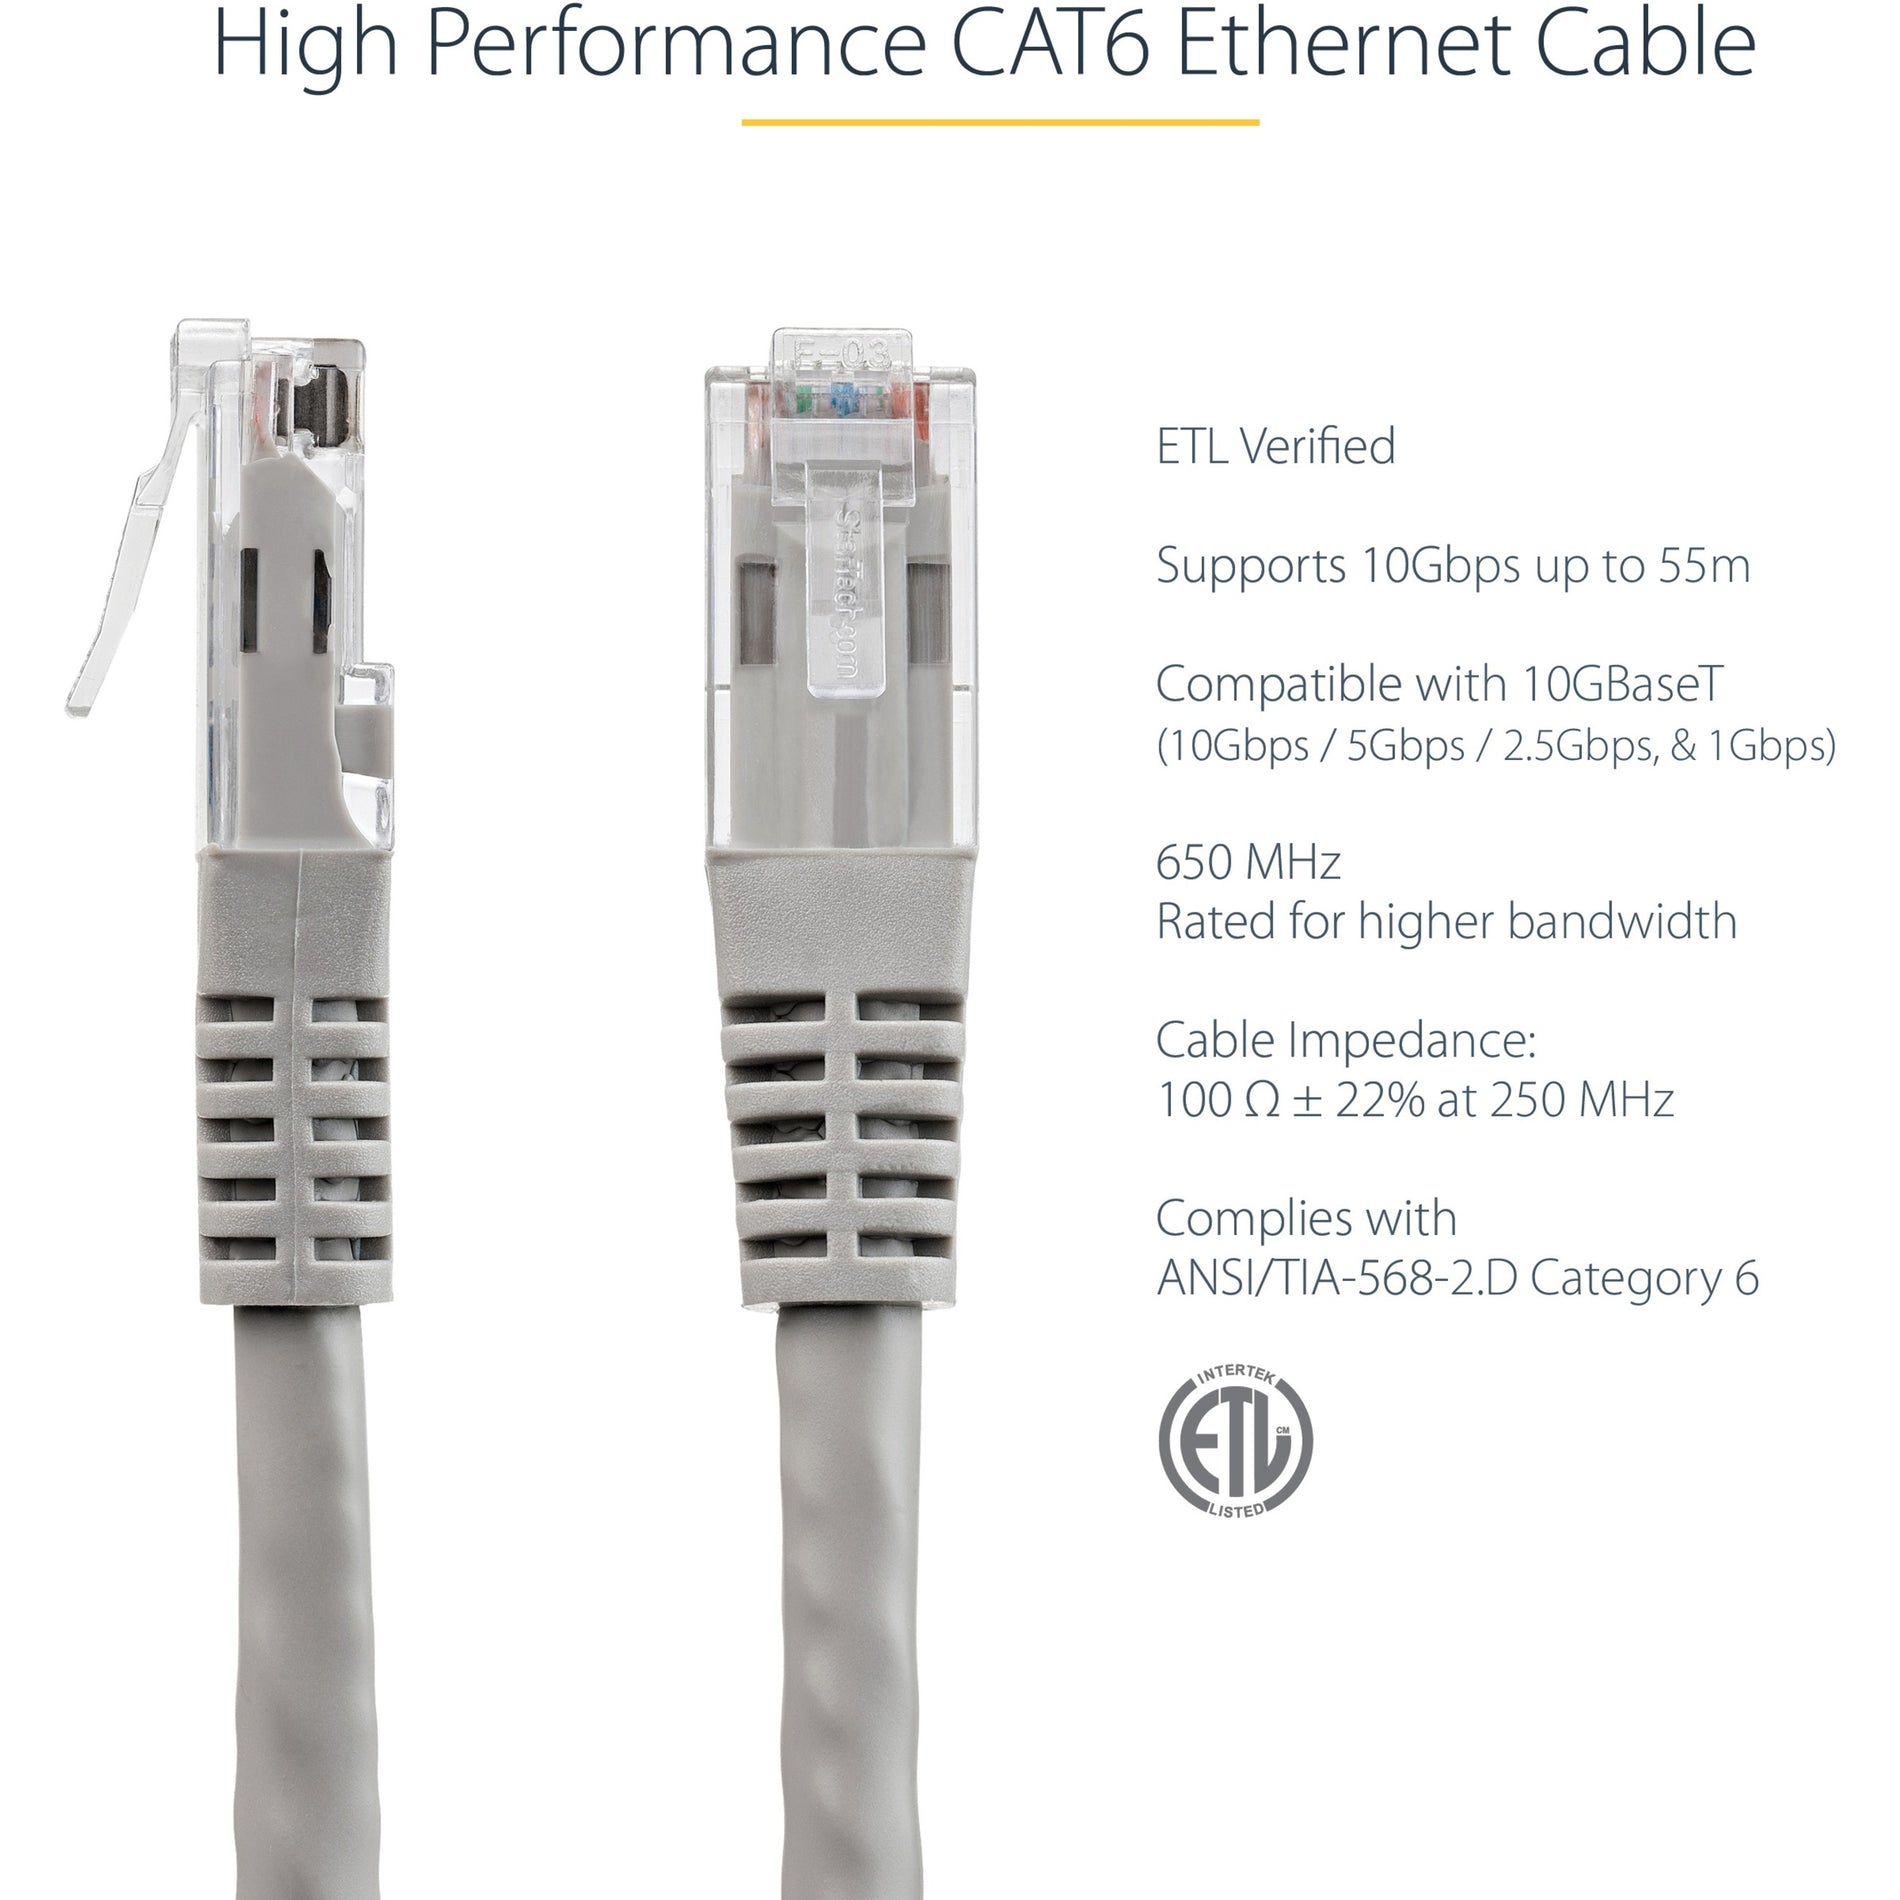 Marca: StarTech.com Cable de conexión UTP Cat6 de 3 pies en gris verificado por ETL Velocidad de transferencia de datos de 10 Gbit/s Conectores chapados en oro